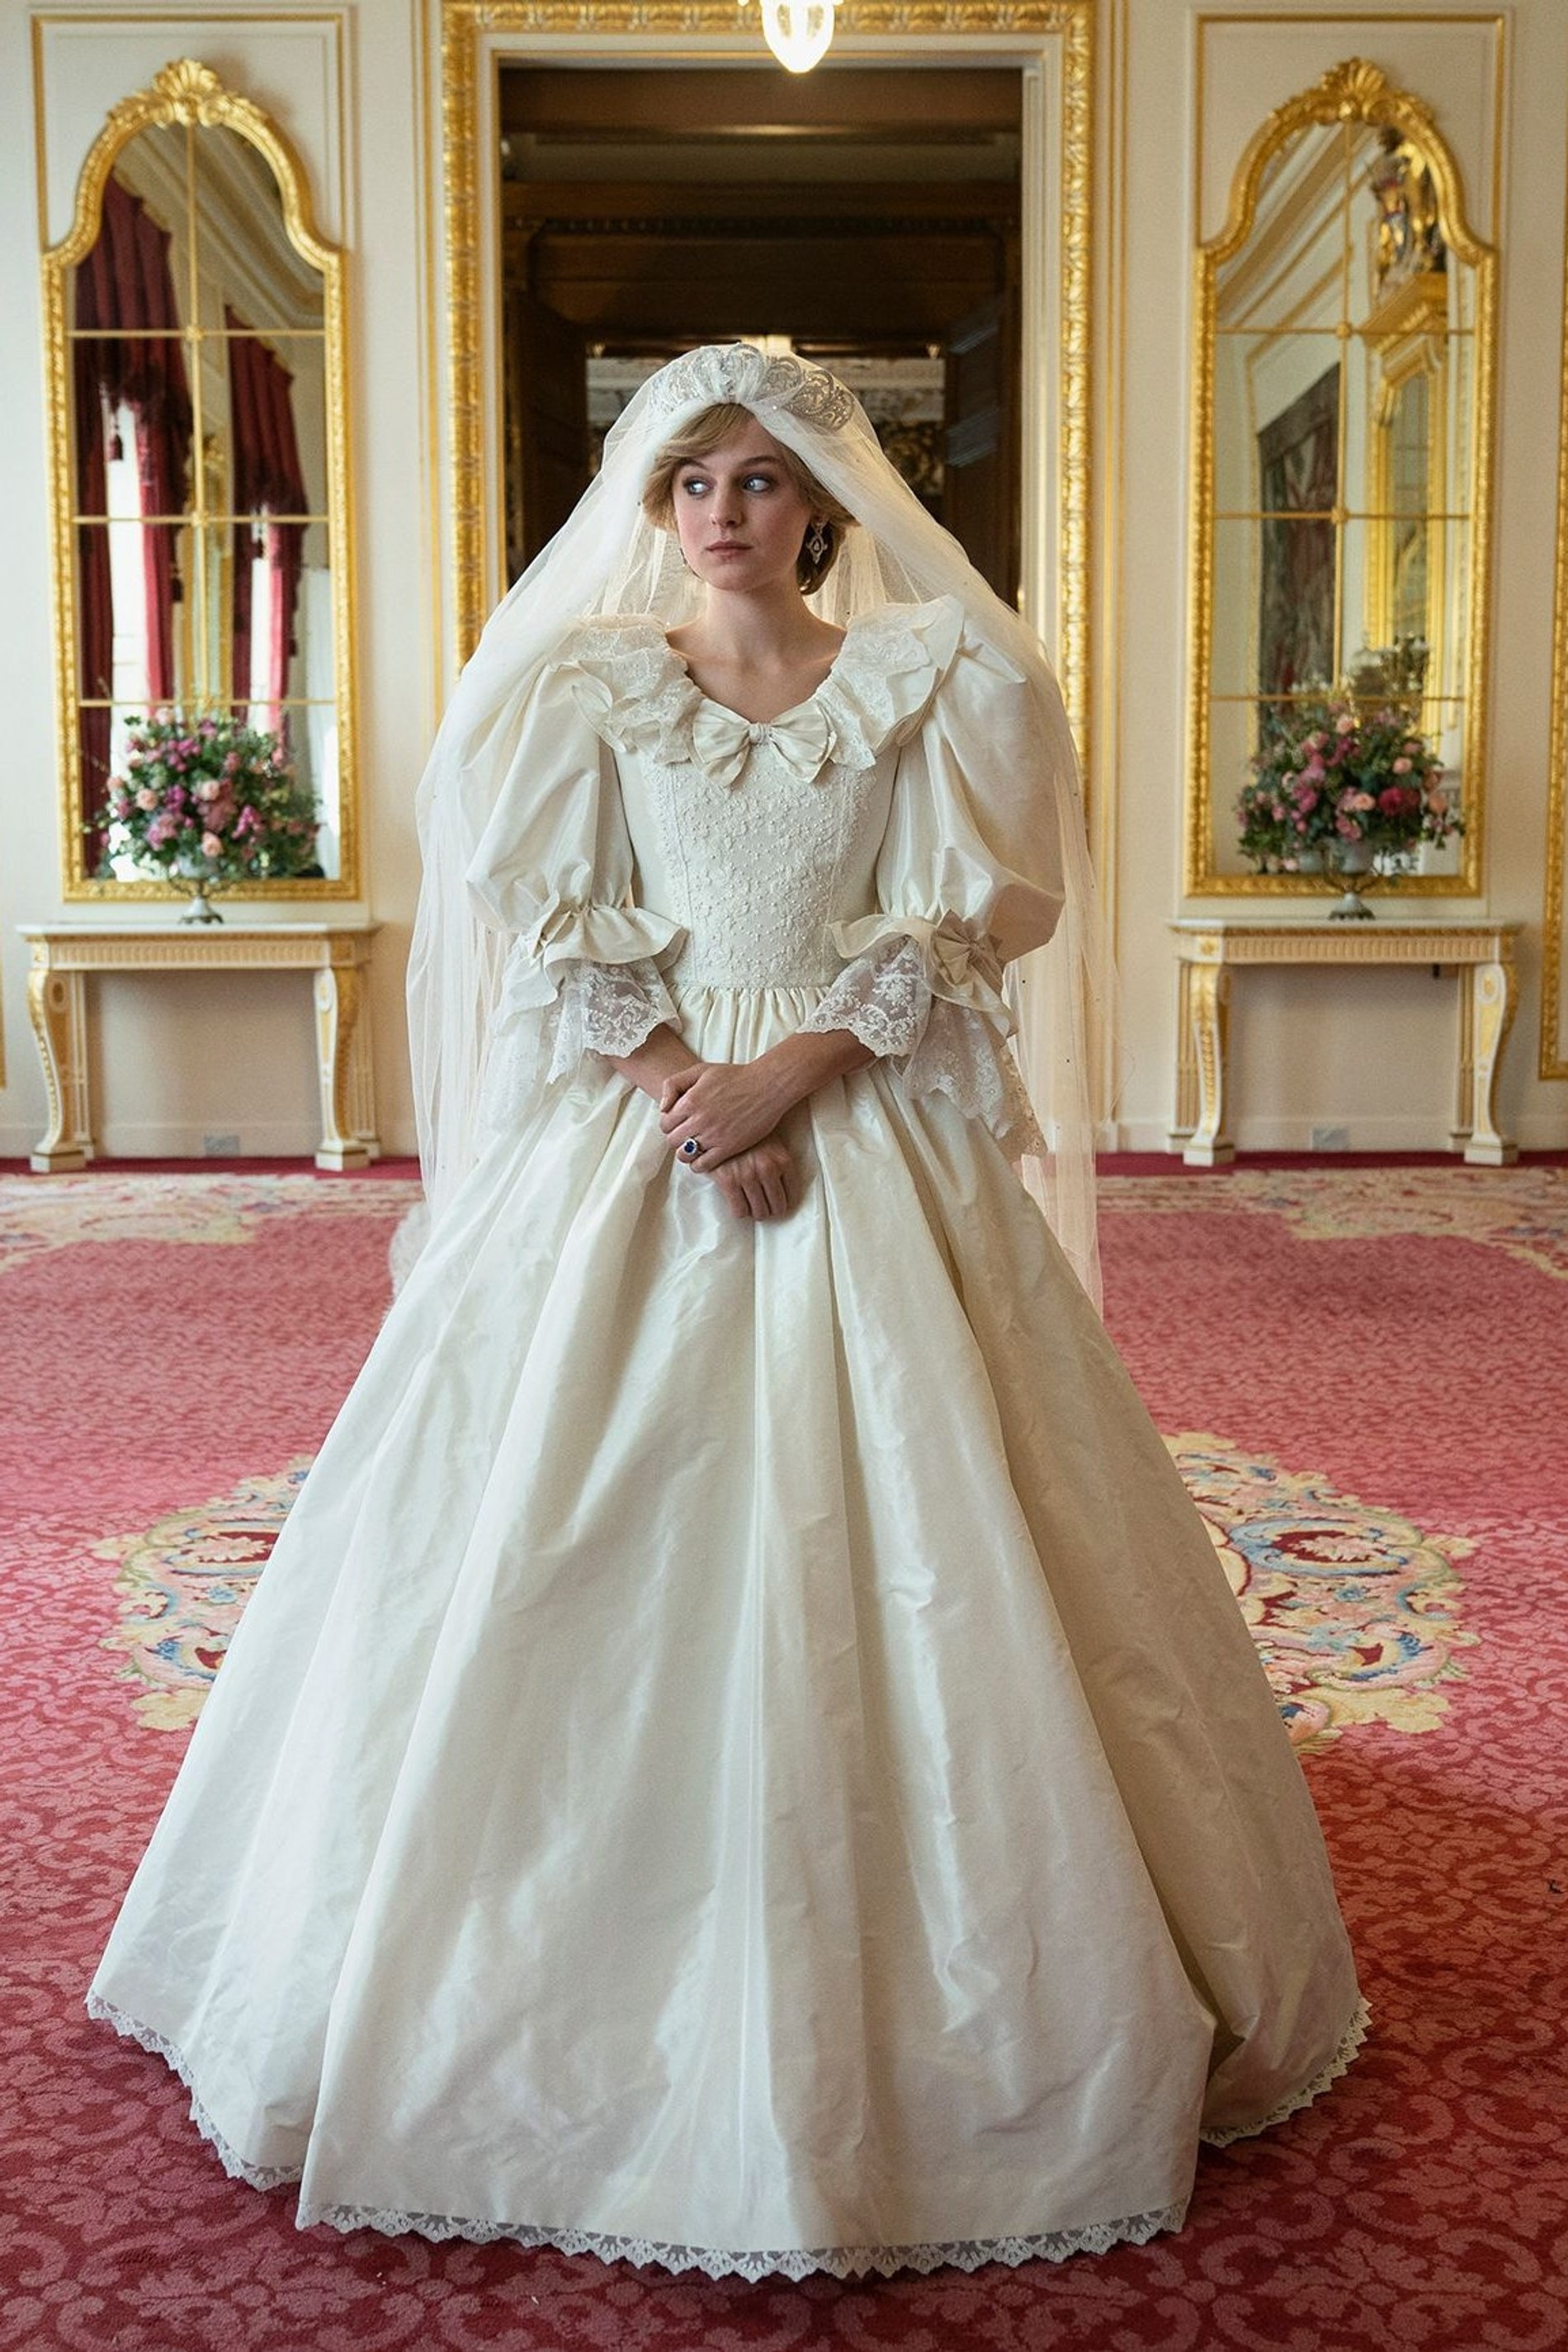 За реплику свадебного наряда Дианы, которое в сериале примерила Эмма Коррин, отвечал дизайнер оригинального платья
Фото: Netflix